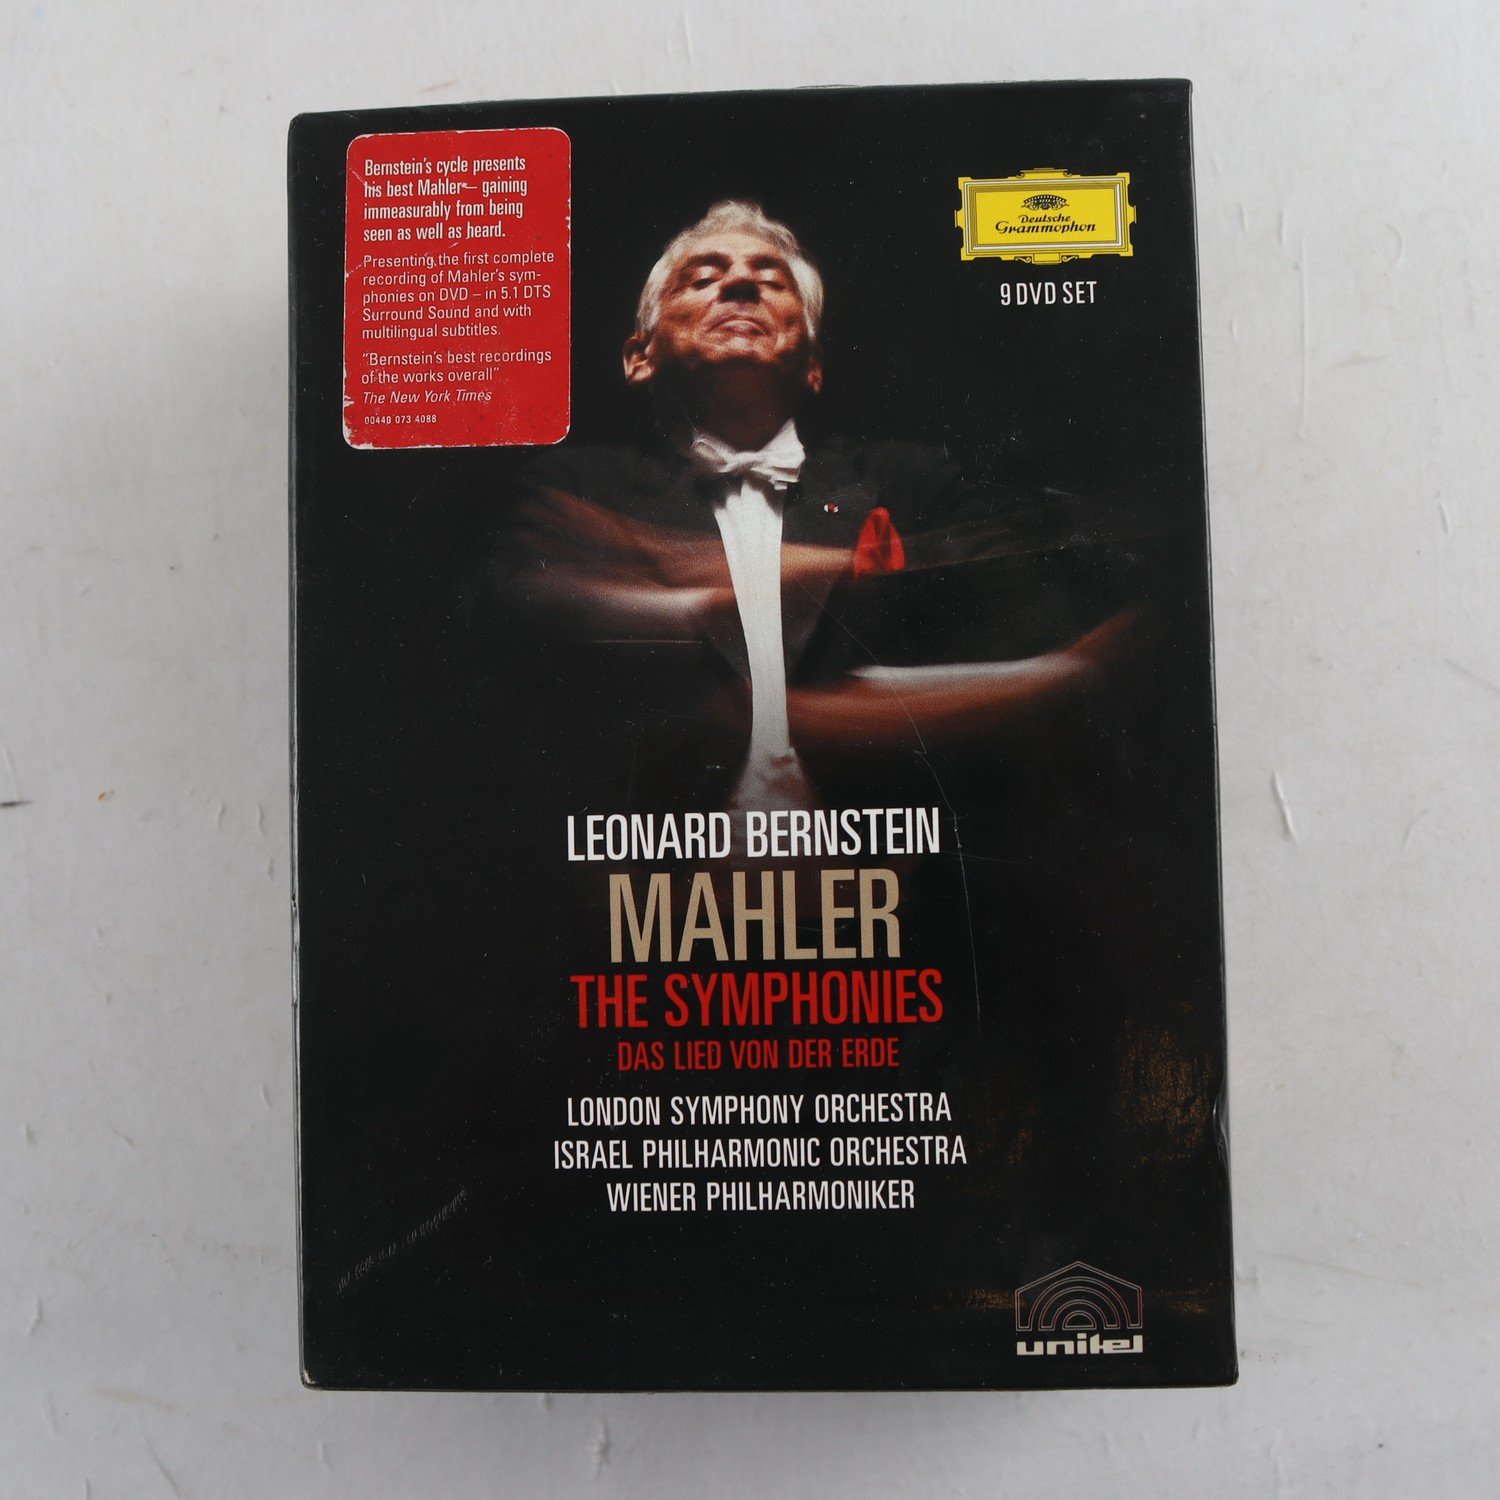 DVD Mahler, Leonard Bernstein, The Symphonies, Das Lied Von Der Erde